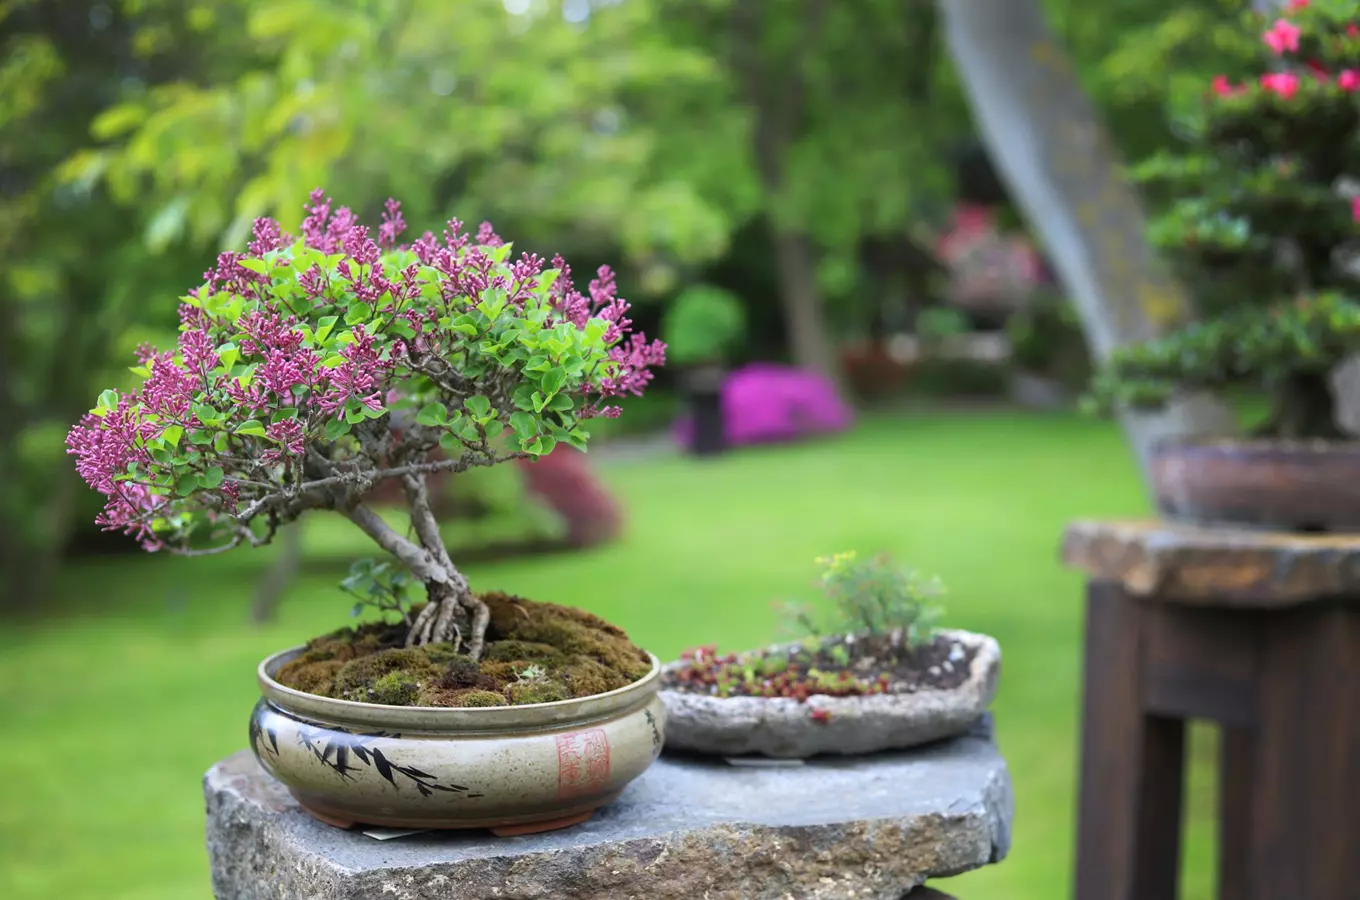 Trojská botanická zahrada se v červnu promění v malé Japonsko